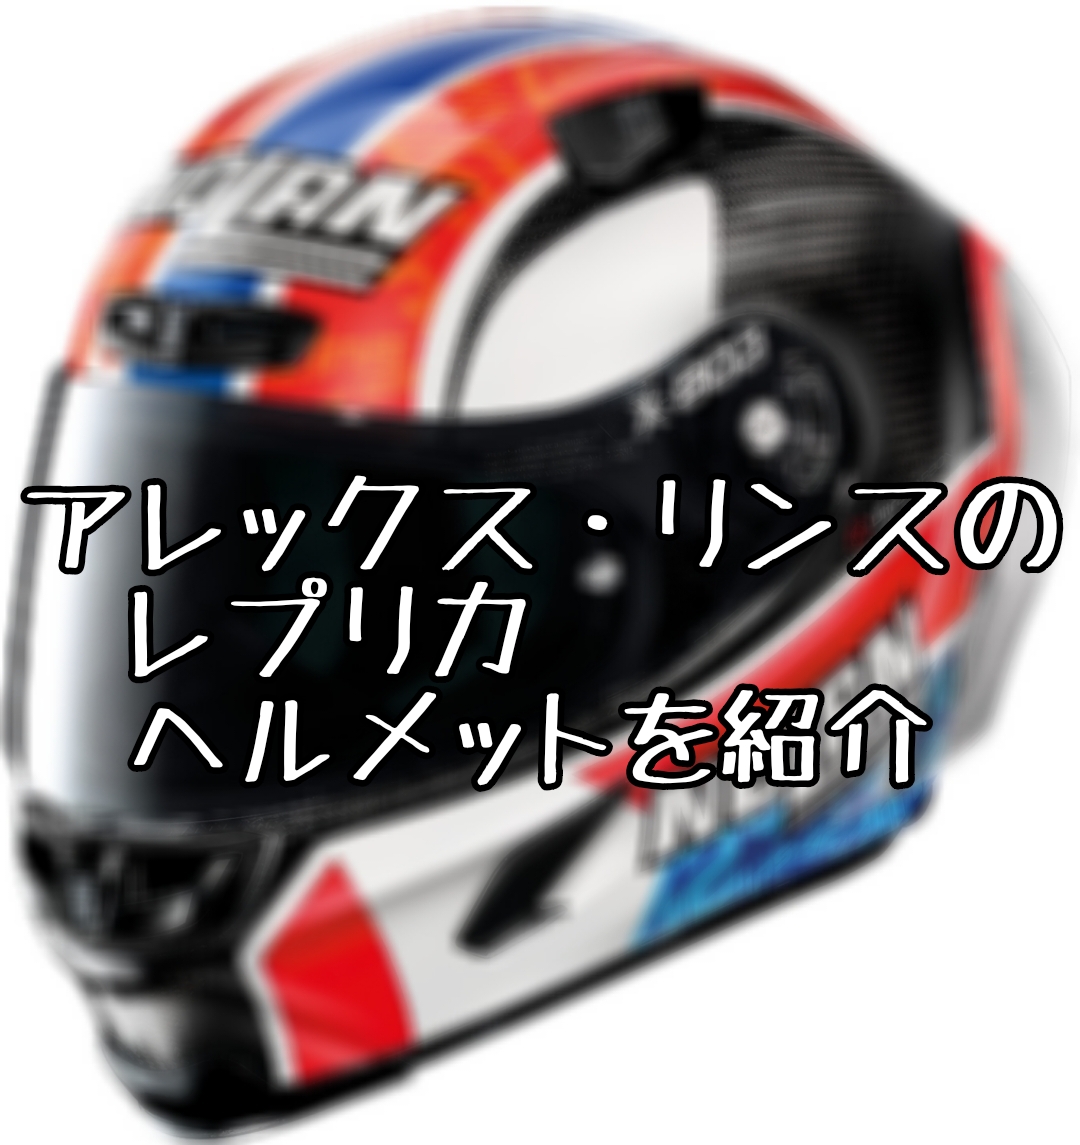 アレックス・リンスのレプリカヘルメットを紹介【NOLAN】 – ヘルメットログ